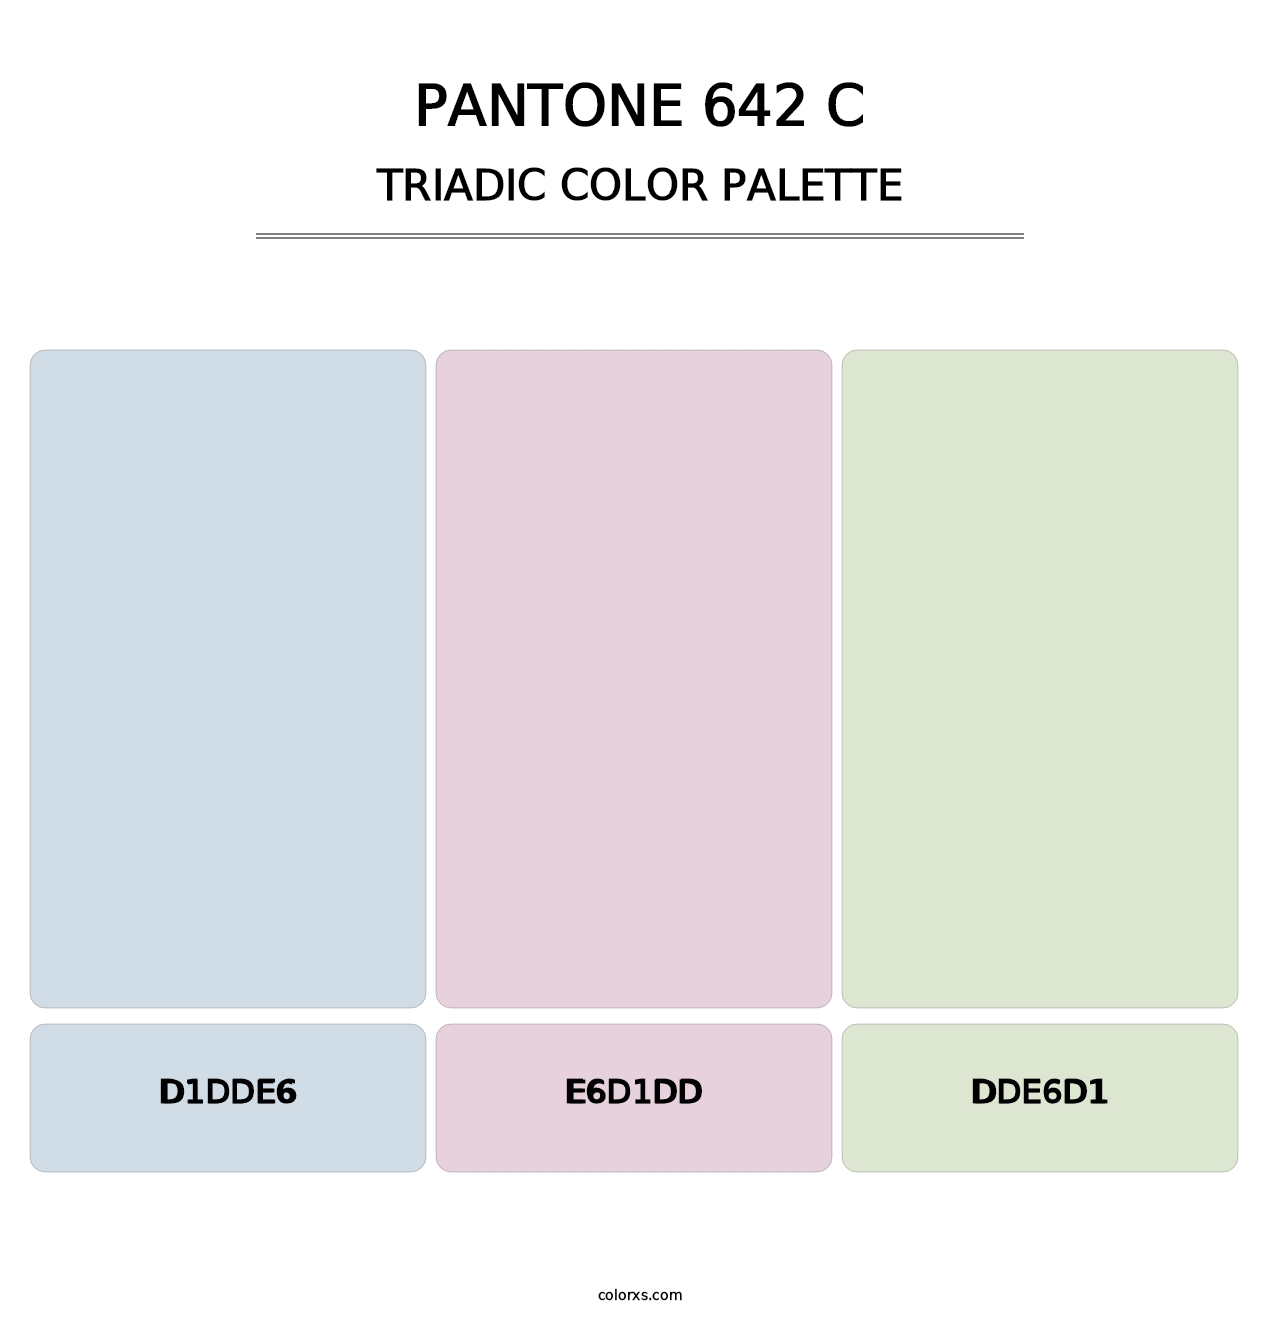 PANTONE 642 C - Triadic Color Palette